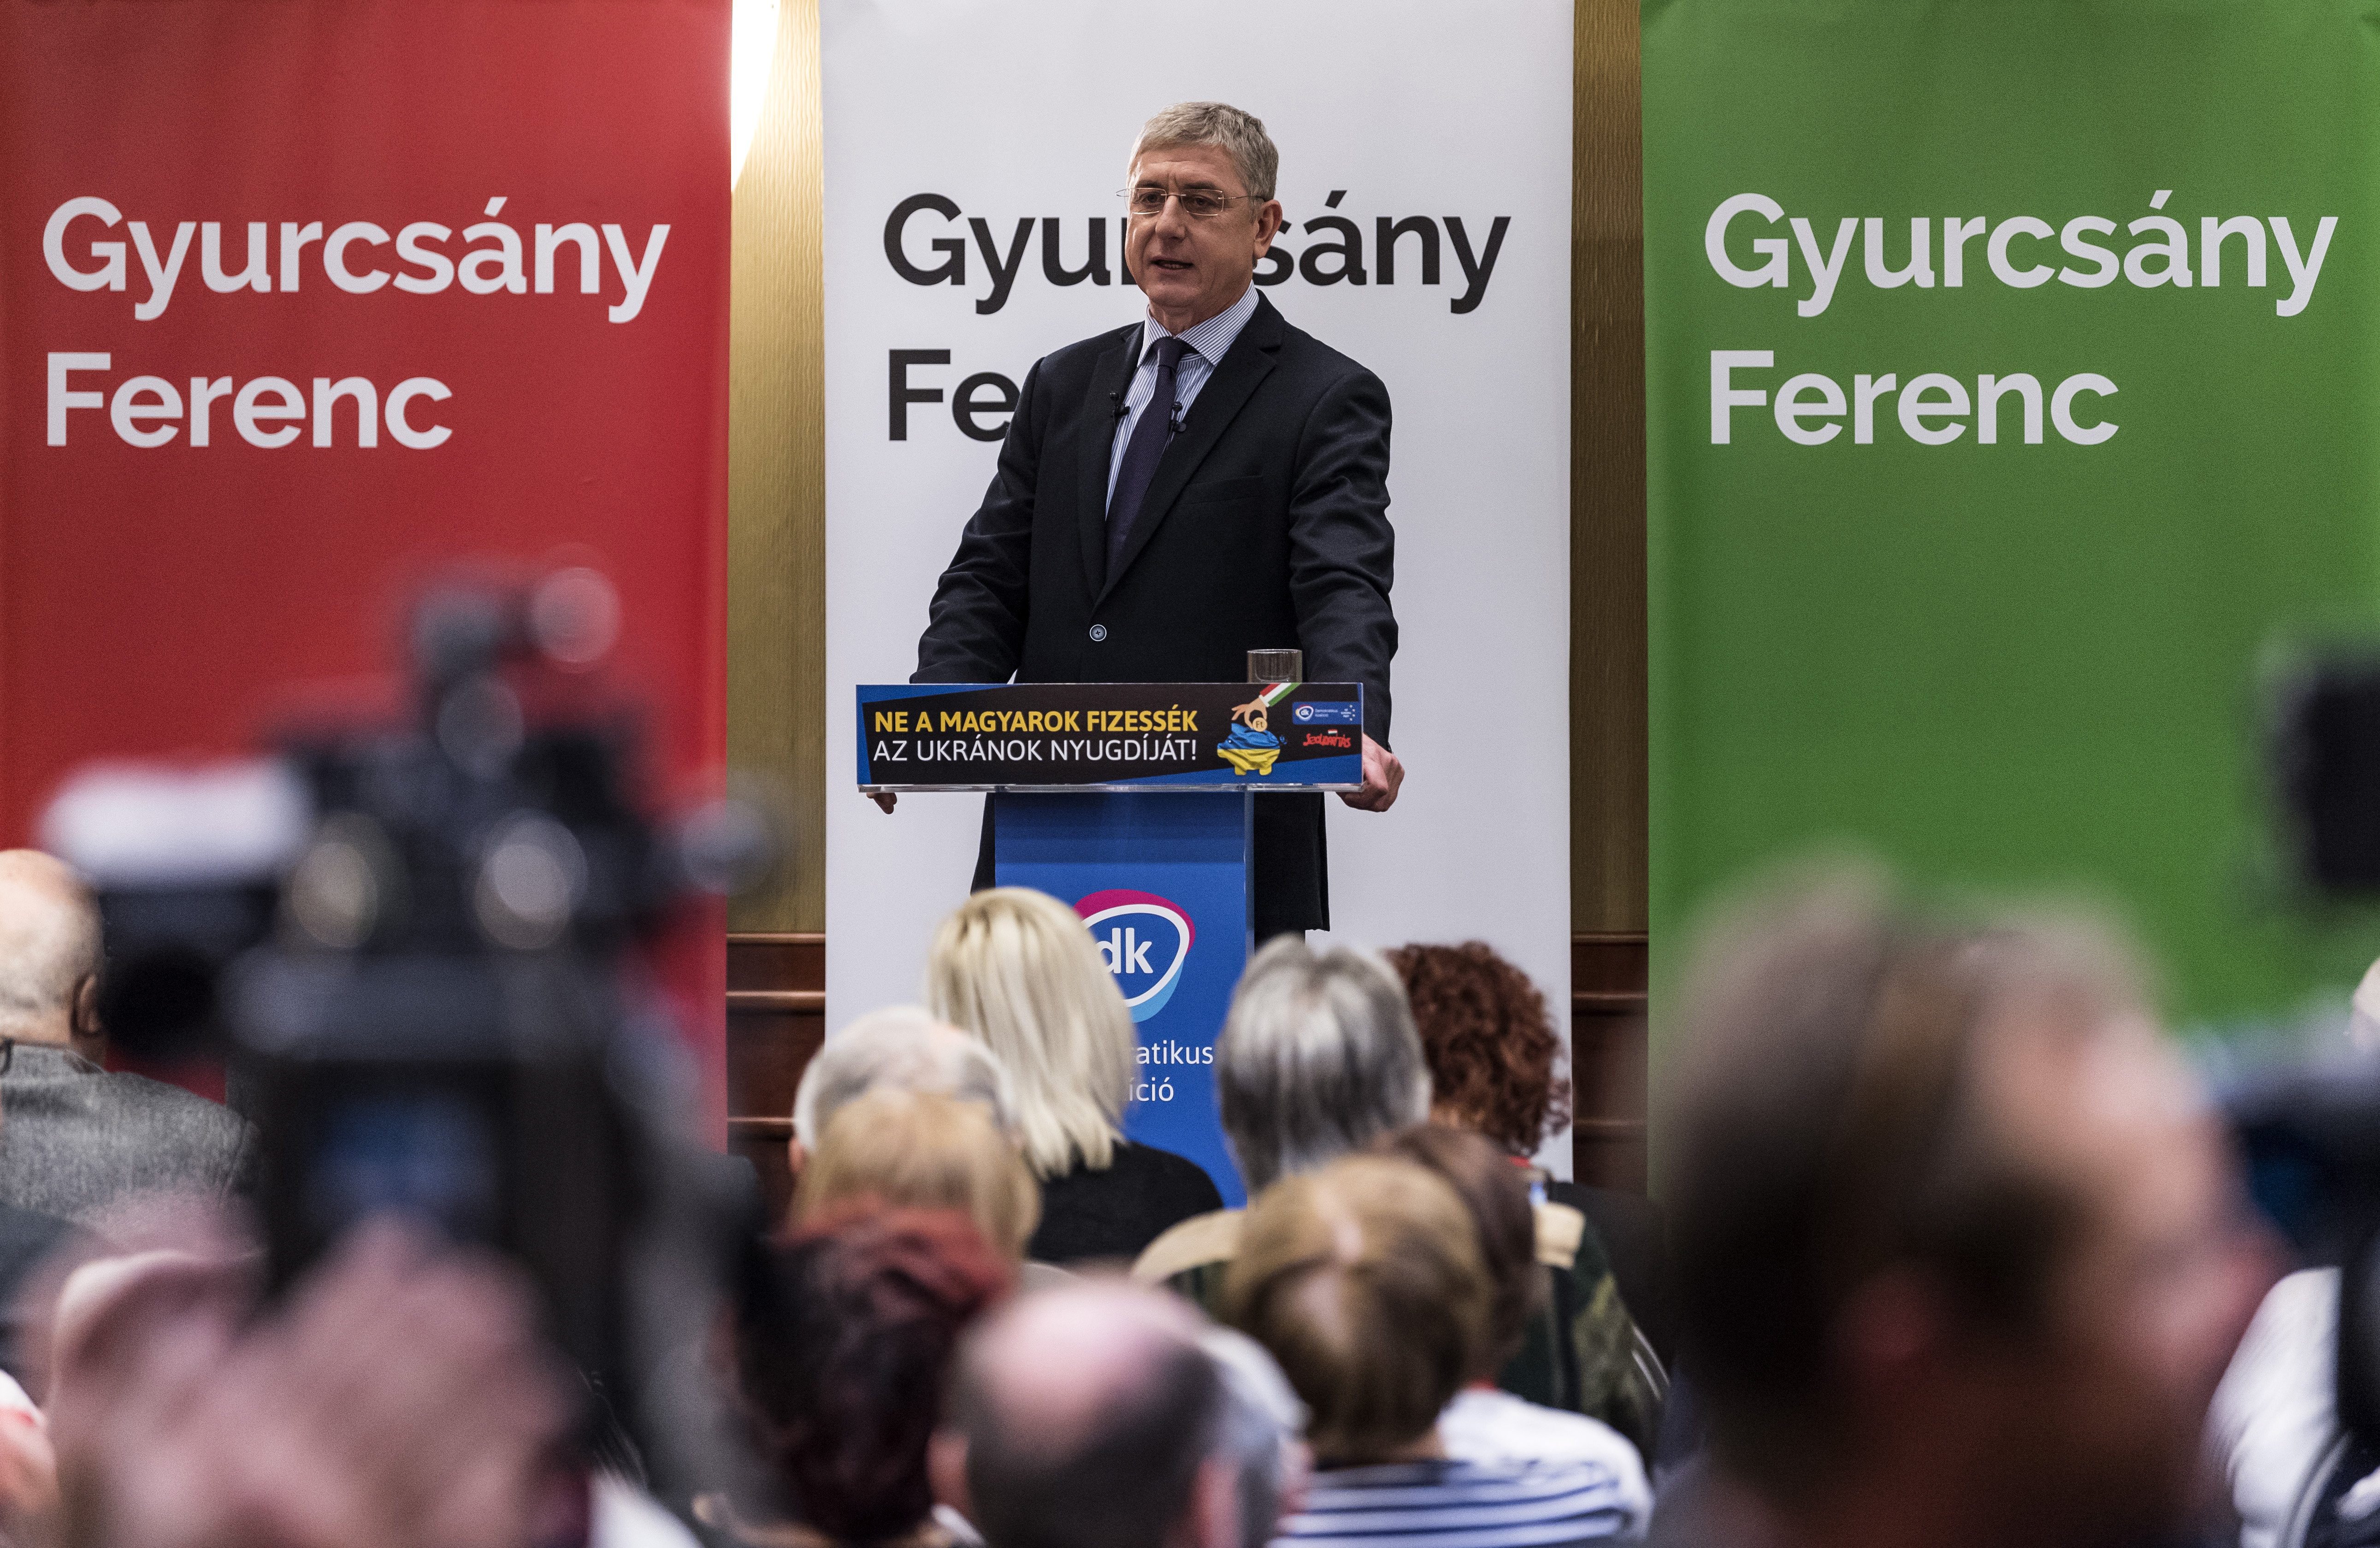 Gyurcsány aláírásokat gyűjt, hogy „ne a magyarok fizessék az ukránok nyugdíját”